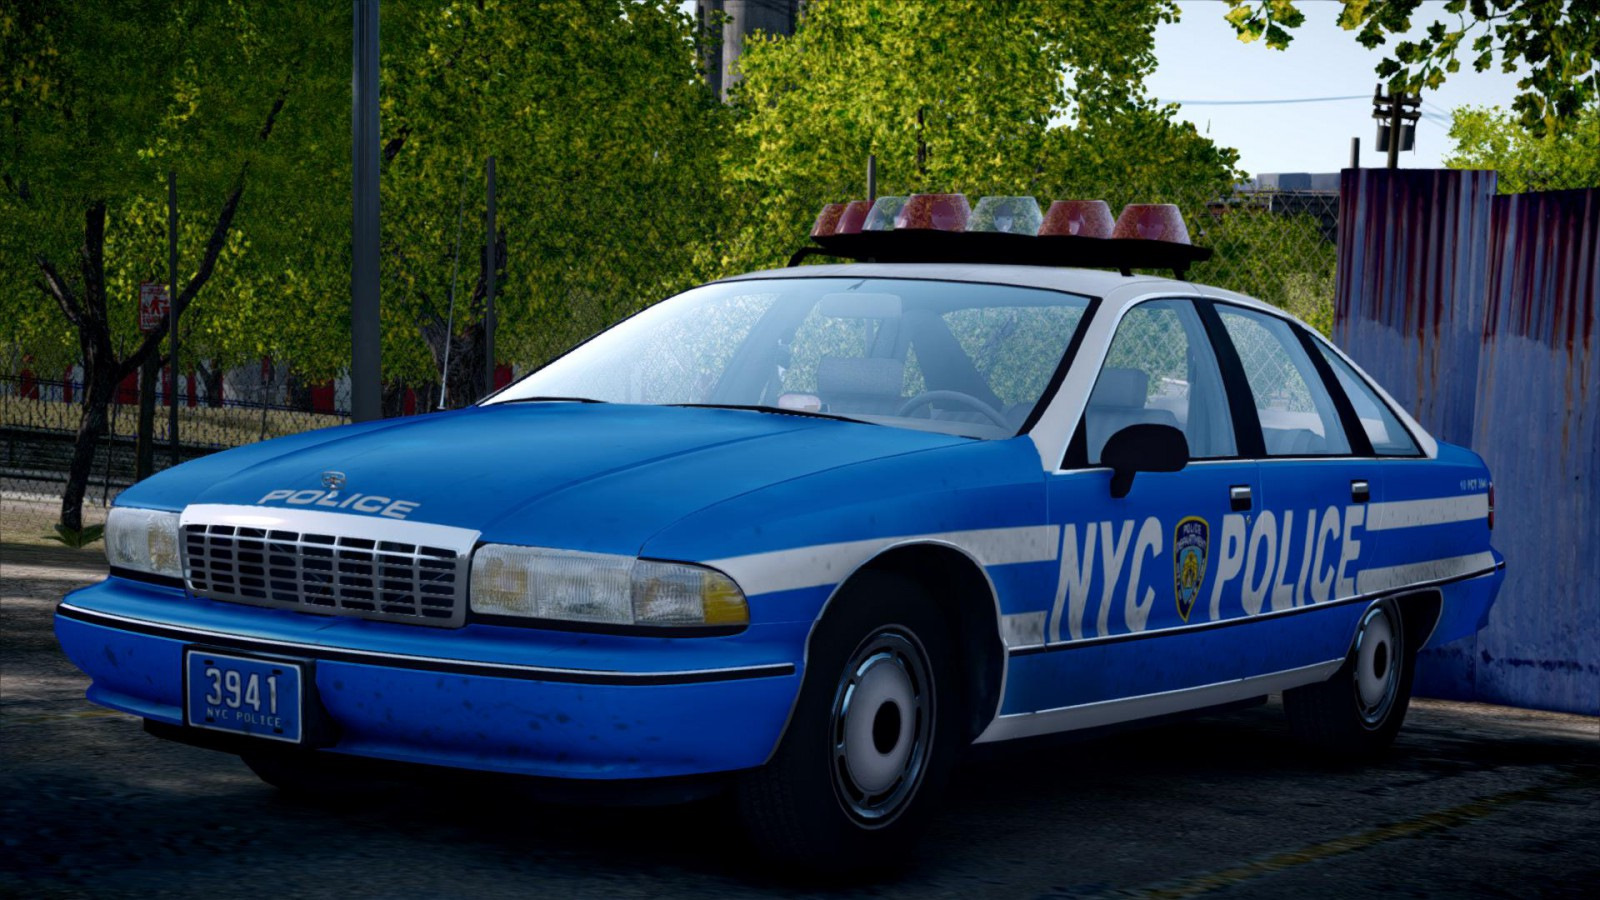 Полицейская машина другая. Chevrolet Caprice 1995. Chevrolet Caprice 2000. Chevrolet Caprice 1991 Police. Chevrolet Caprice 1991 NYPD.